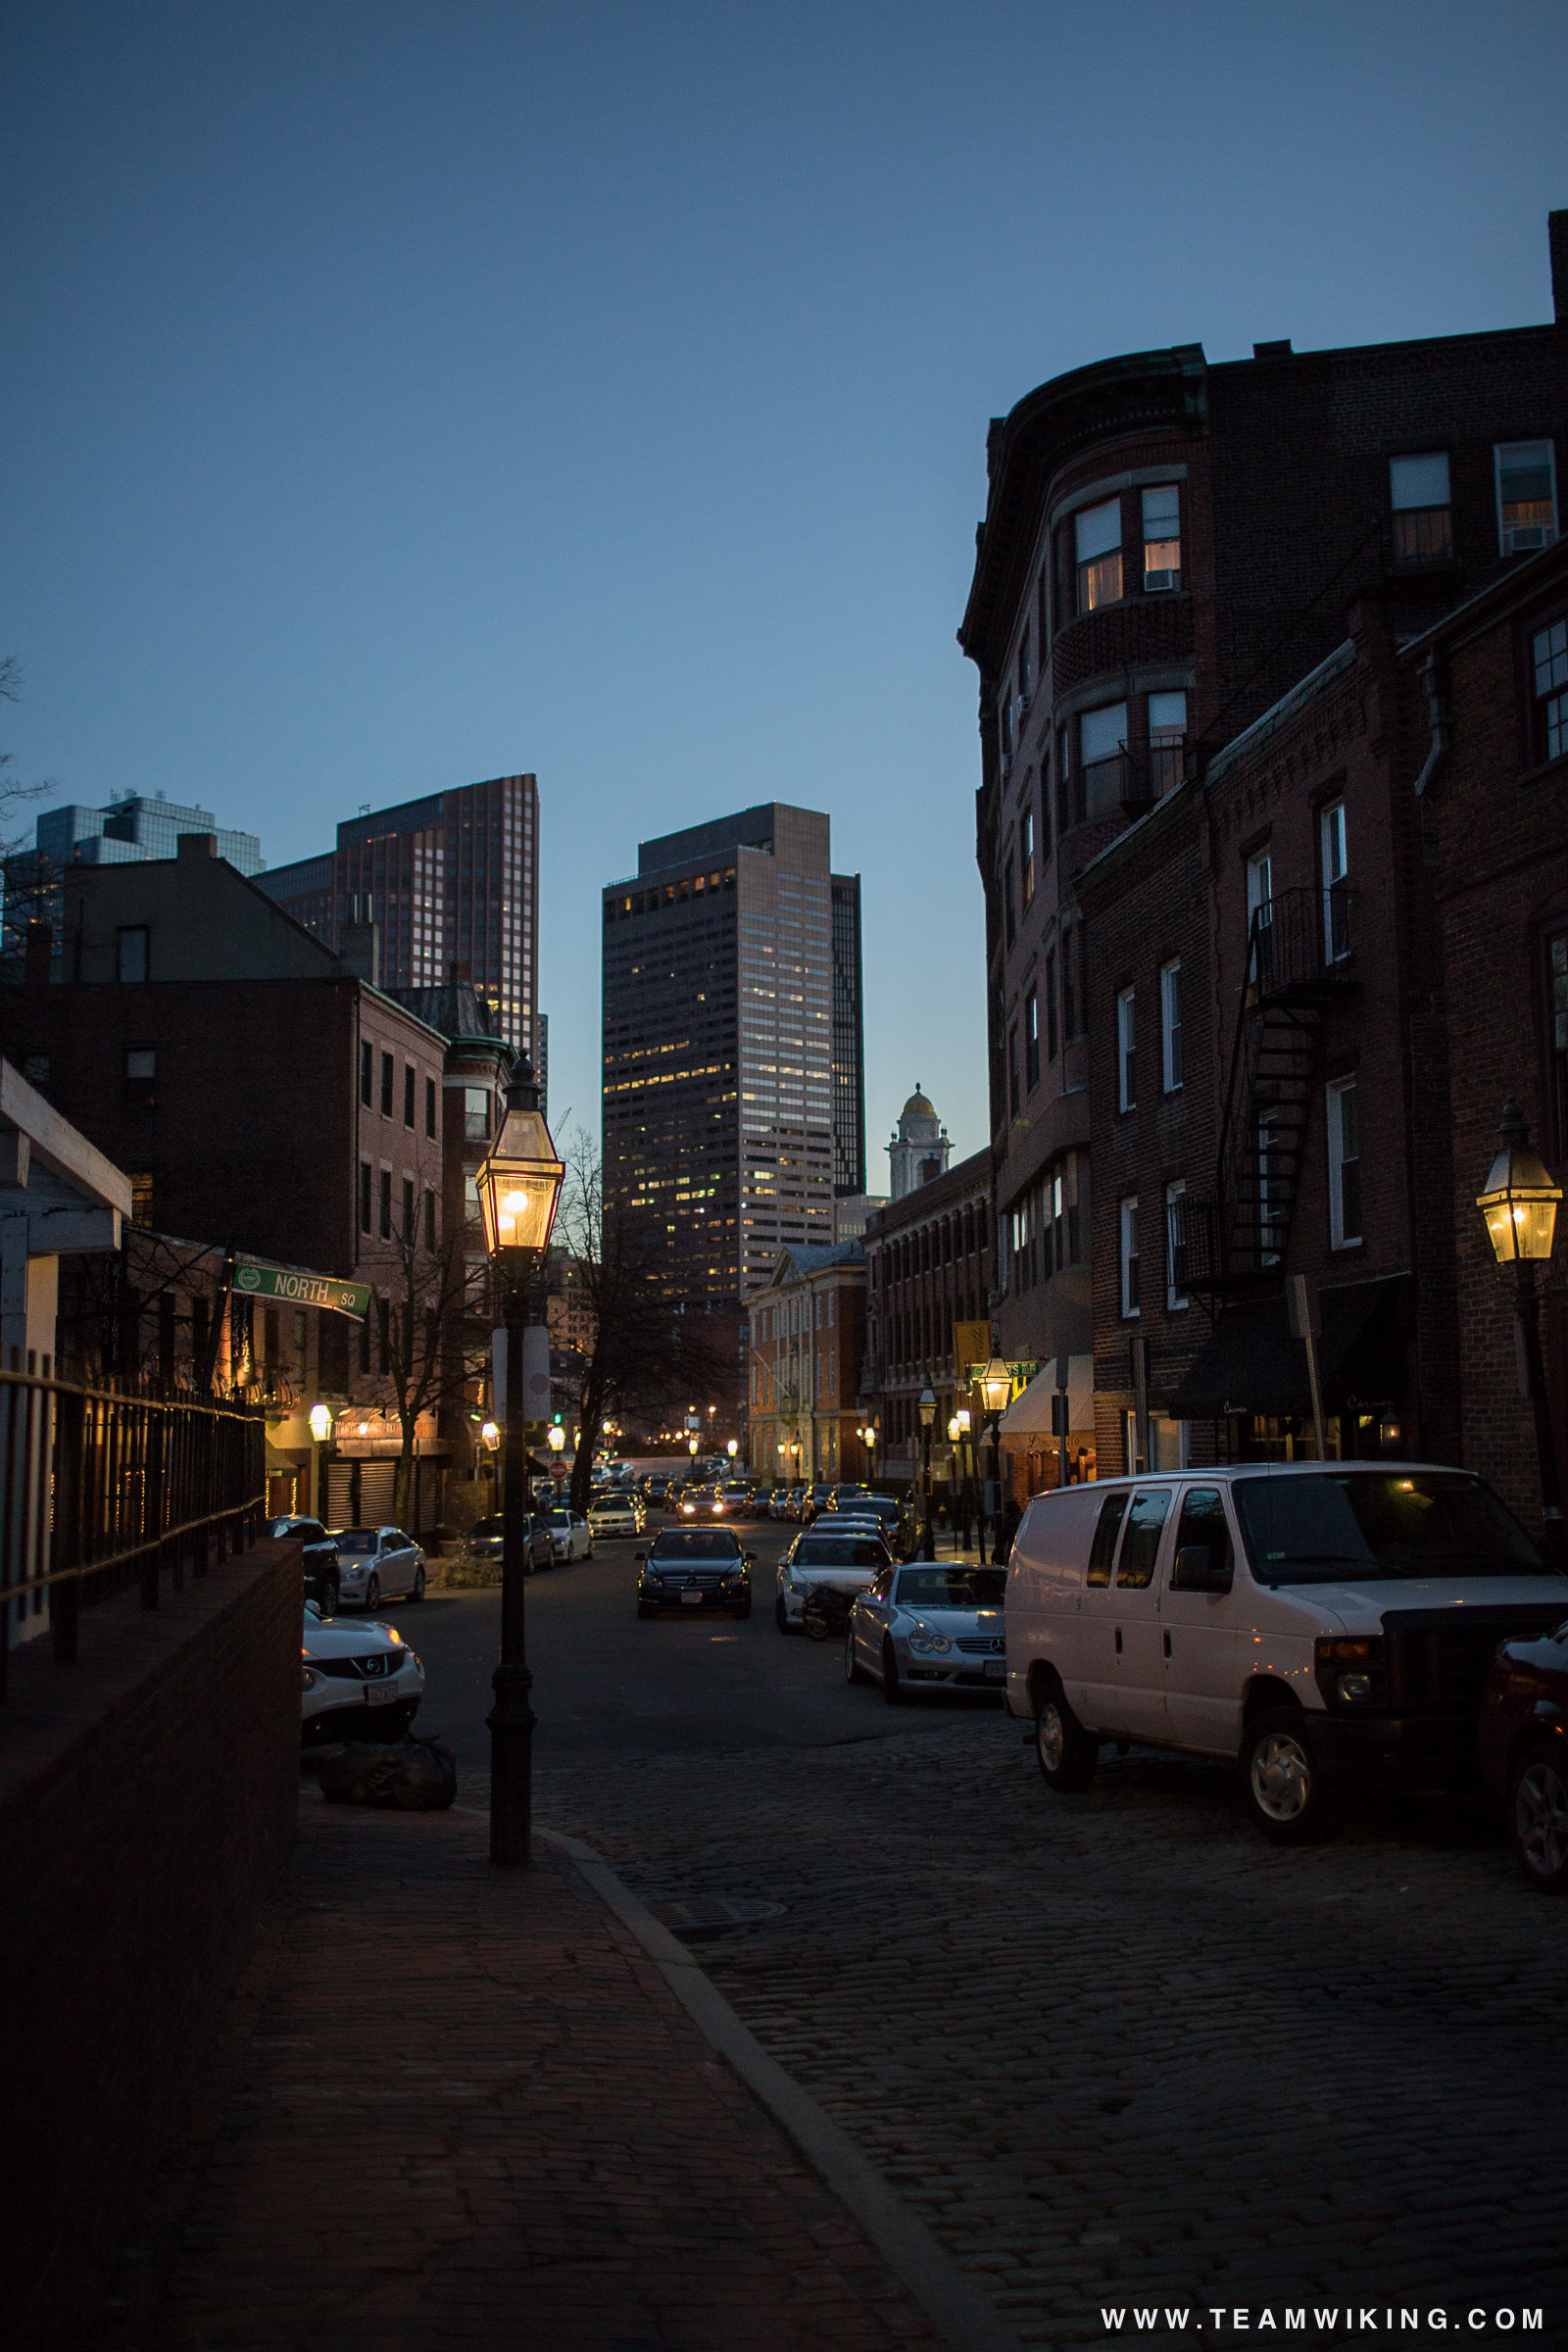 North End in Boston